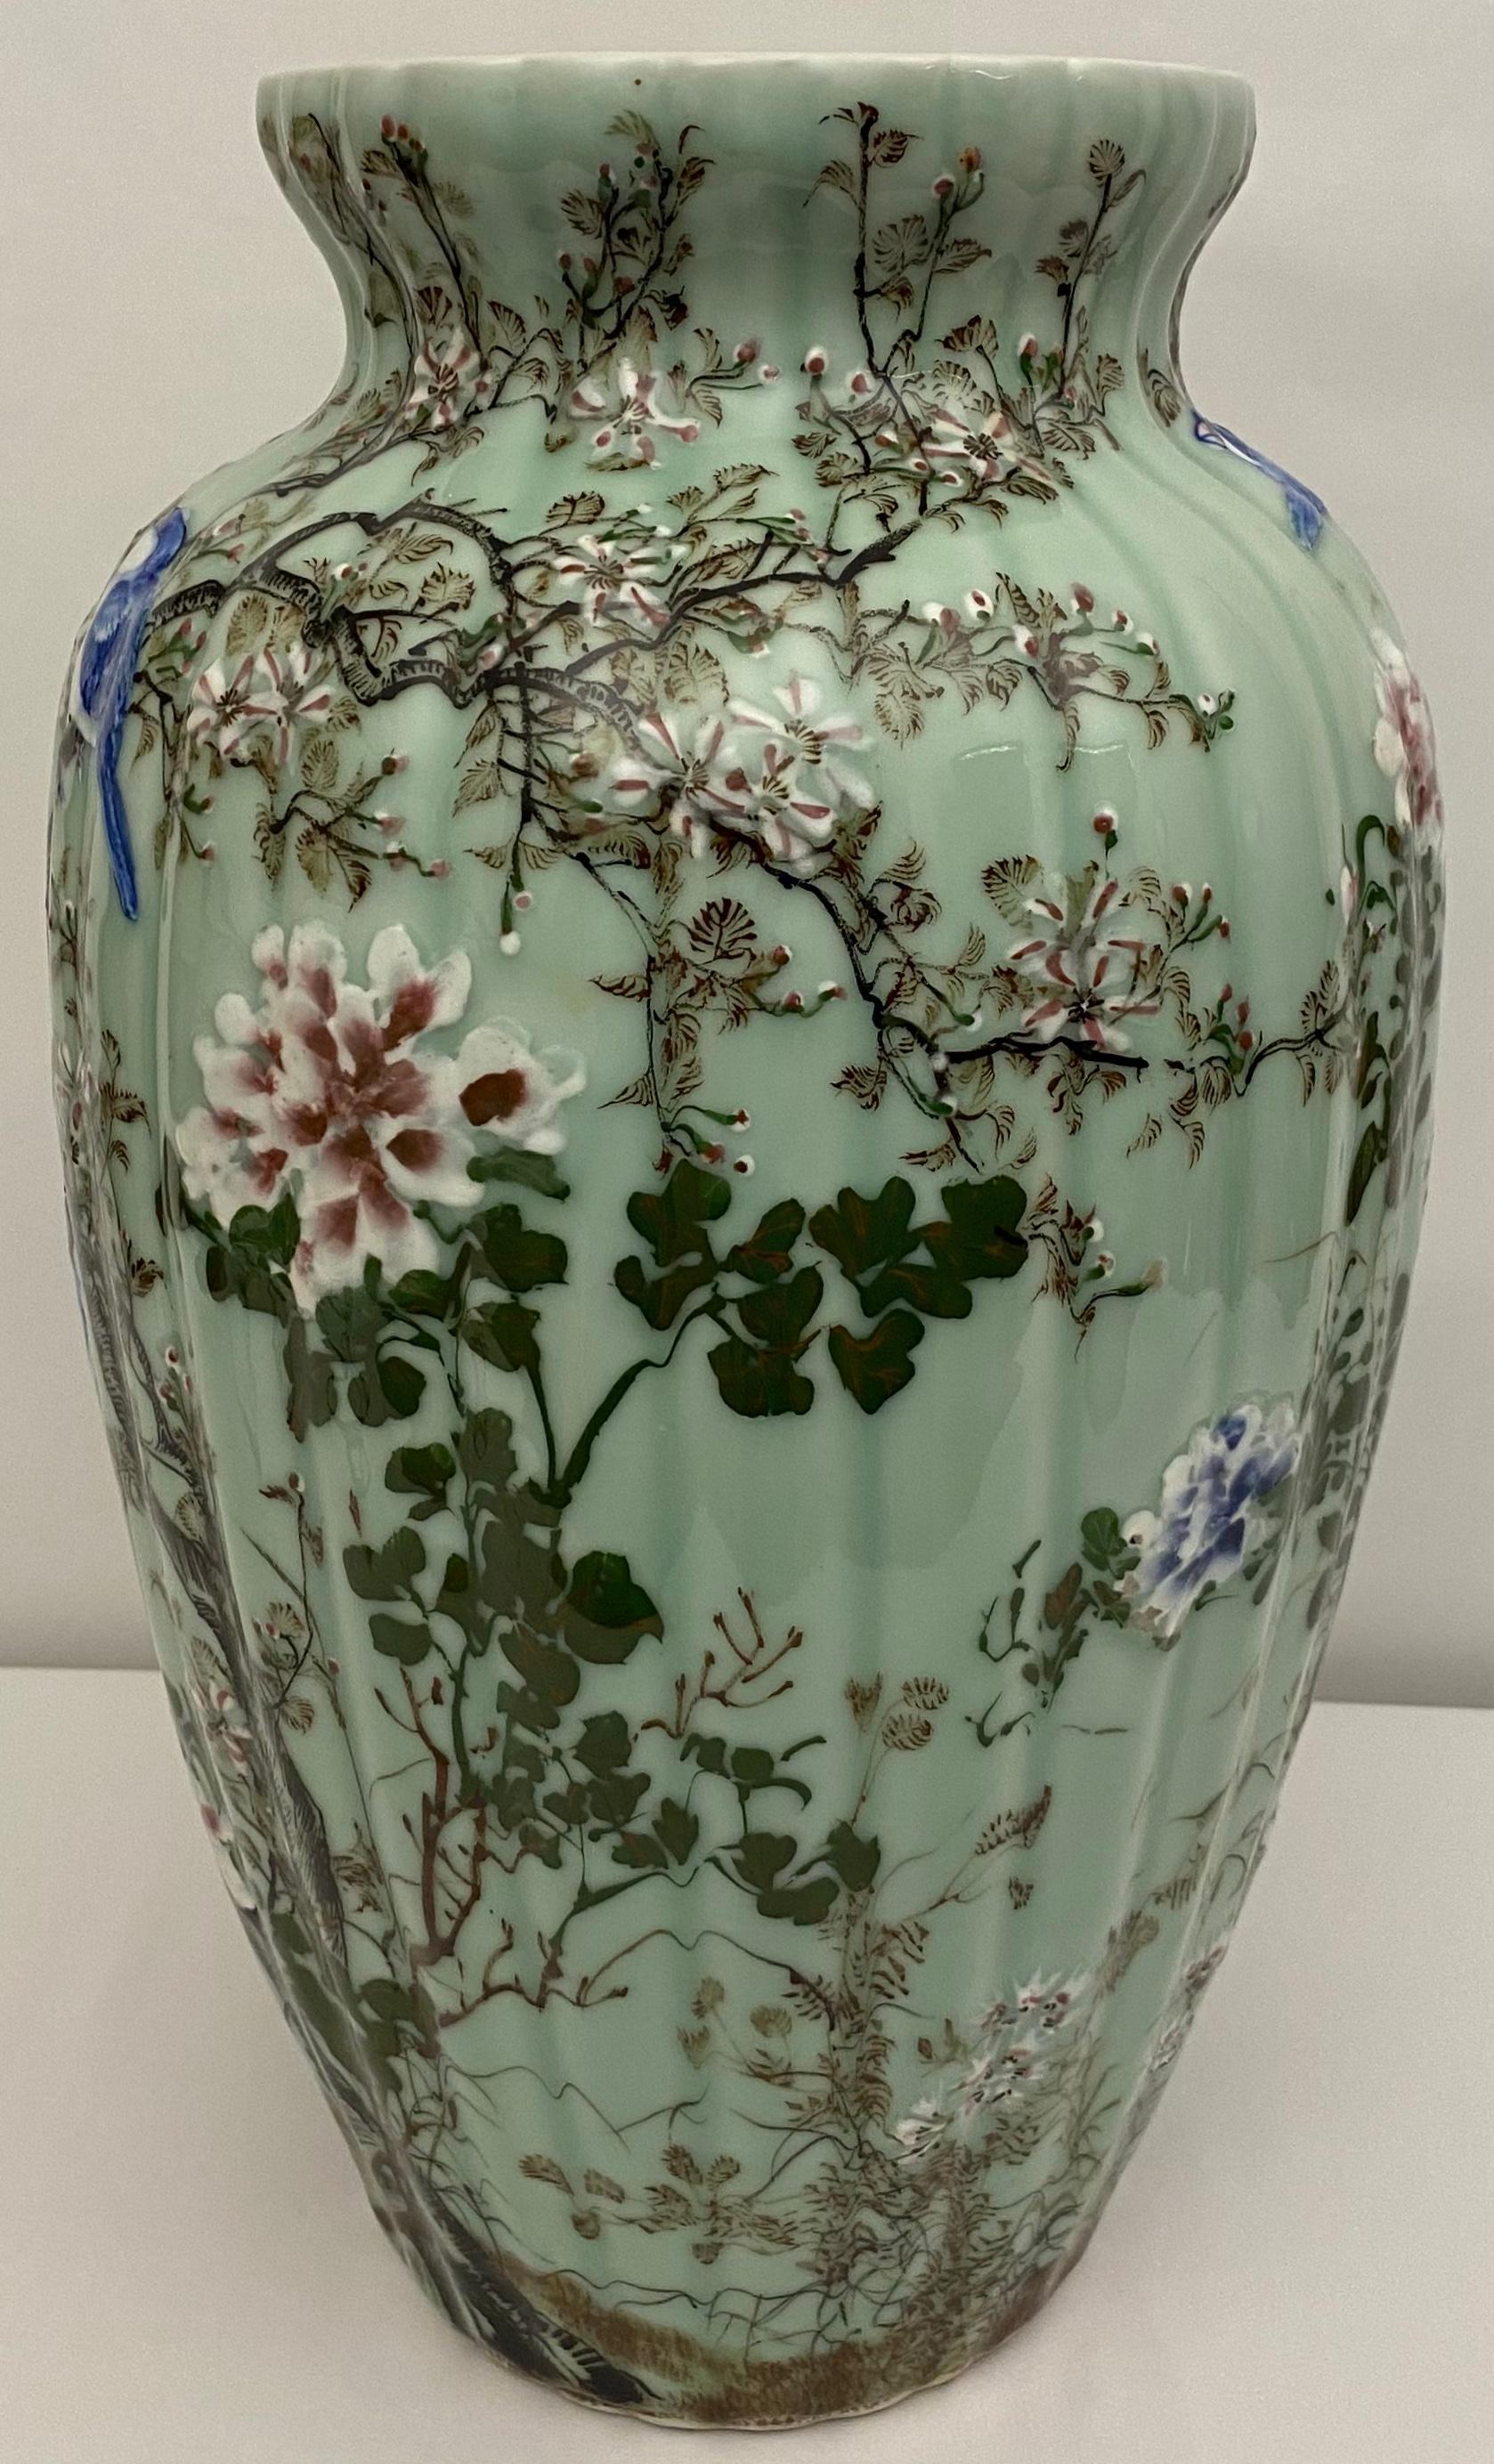 Ce captivant vase en porcelaine de la période Medji (1868-1912) présente une fascinante glaçure céladon, avec une texture subtilement craquelée. Des détails exquis, minutieusement peints à la main dans des émaux bleus, blancs, verts et roses pâles